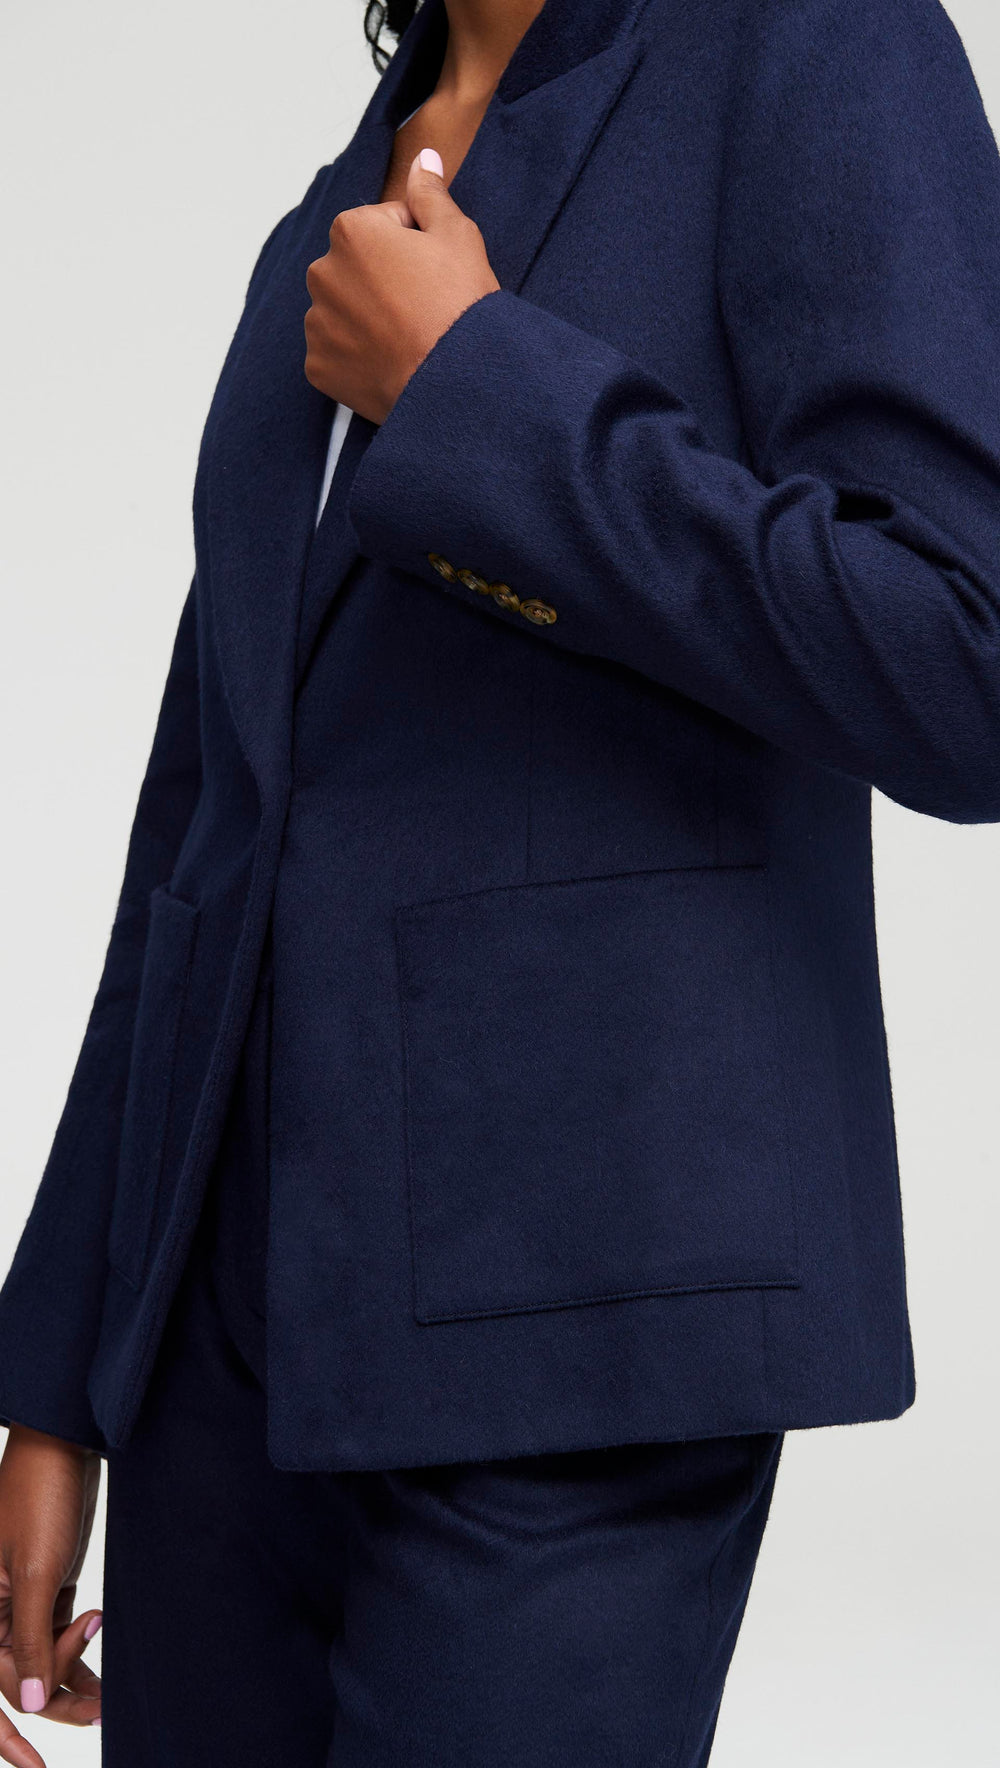 Patch Pocket Blazer in Textured Wool | Navy